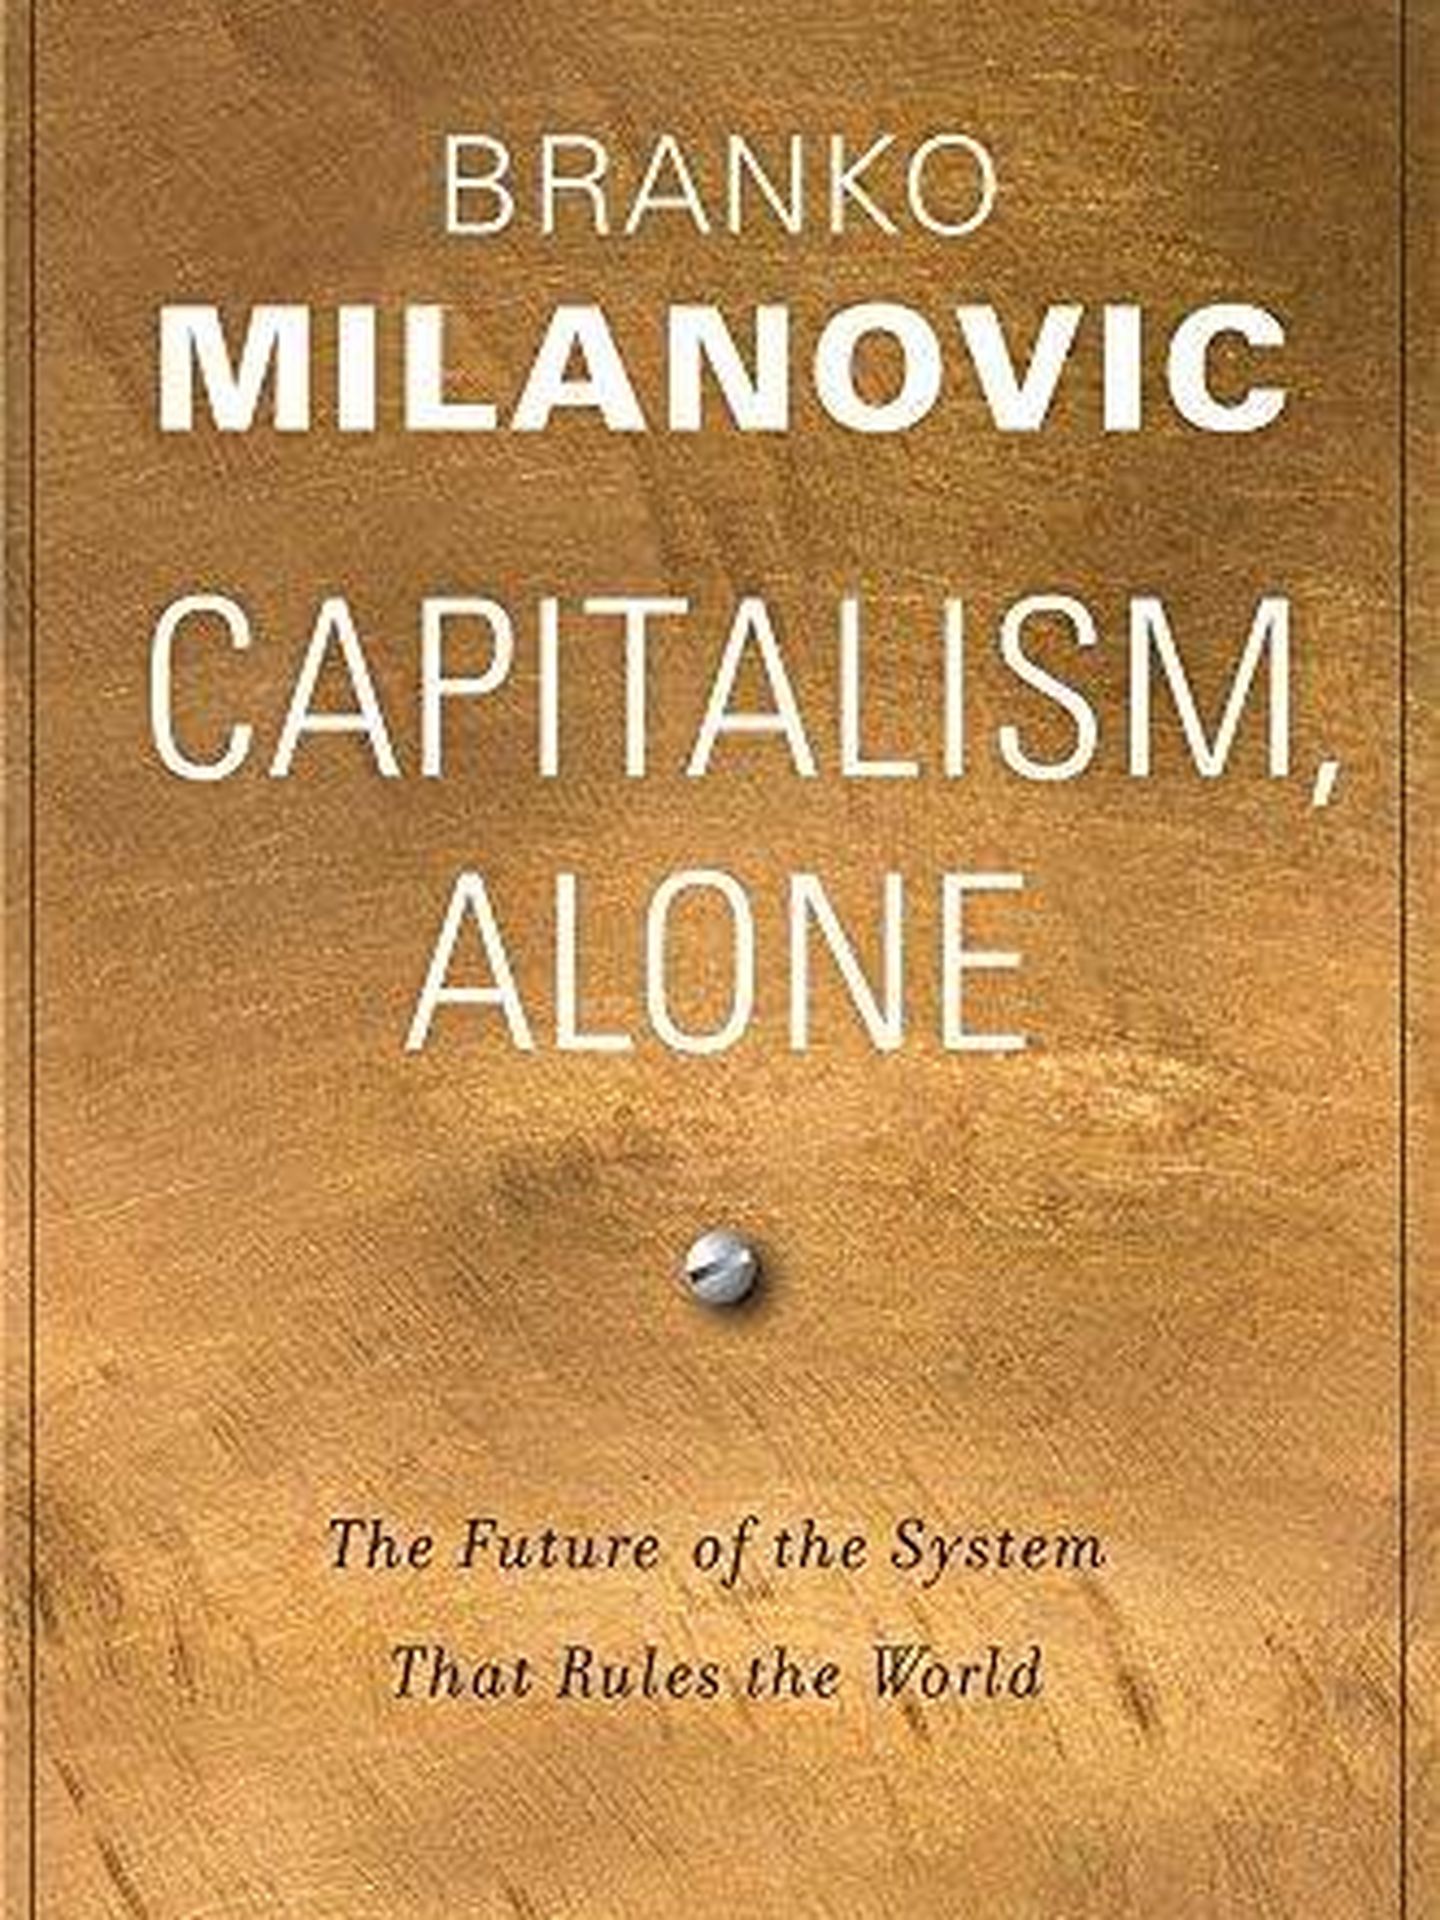 Portada de 'Capitalism Alone'. (Amazon)